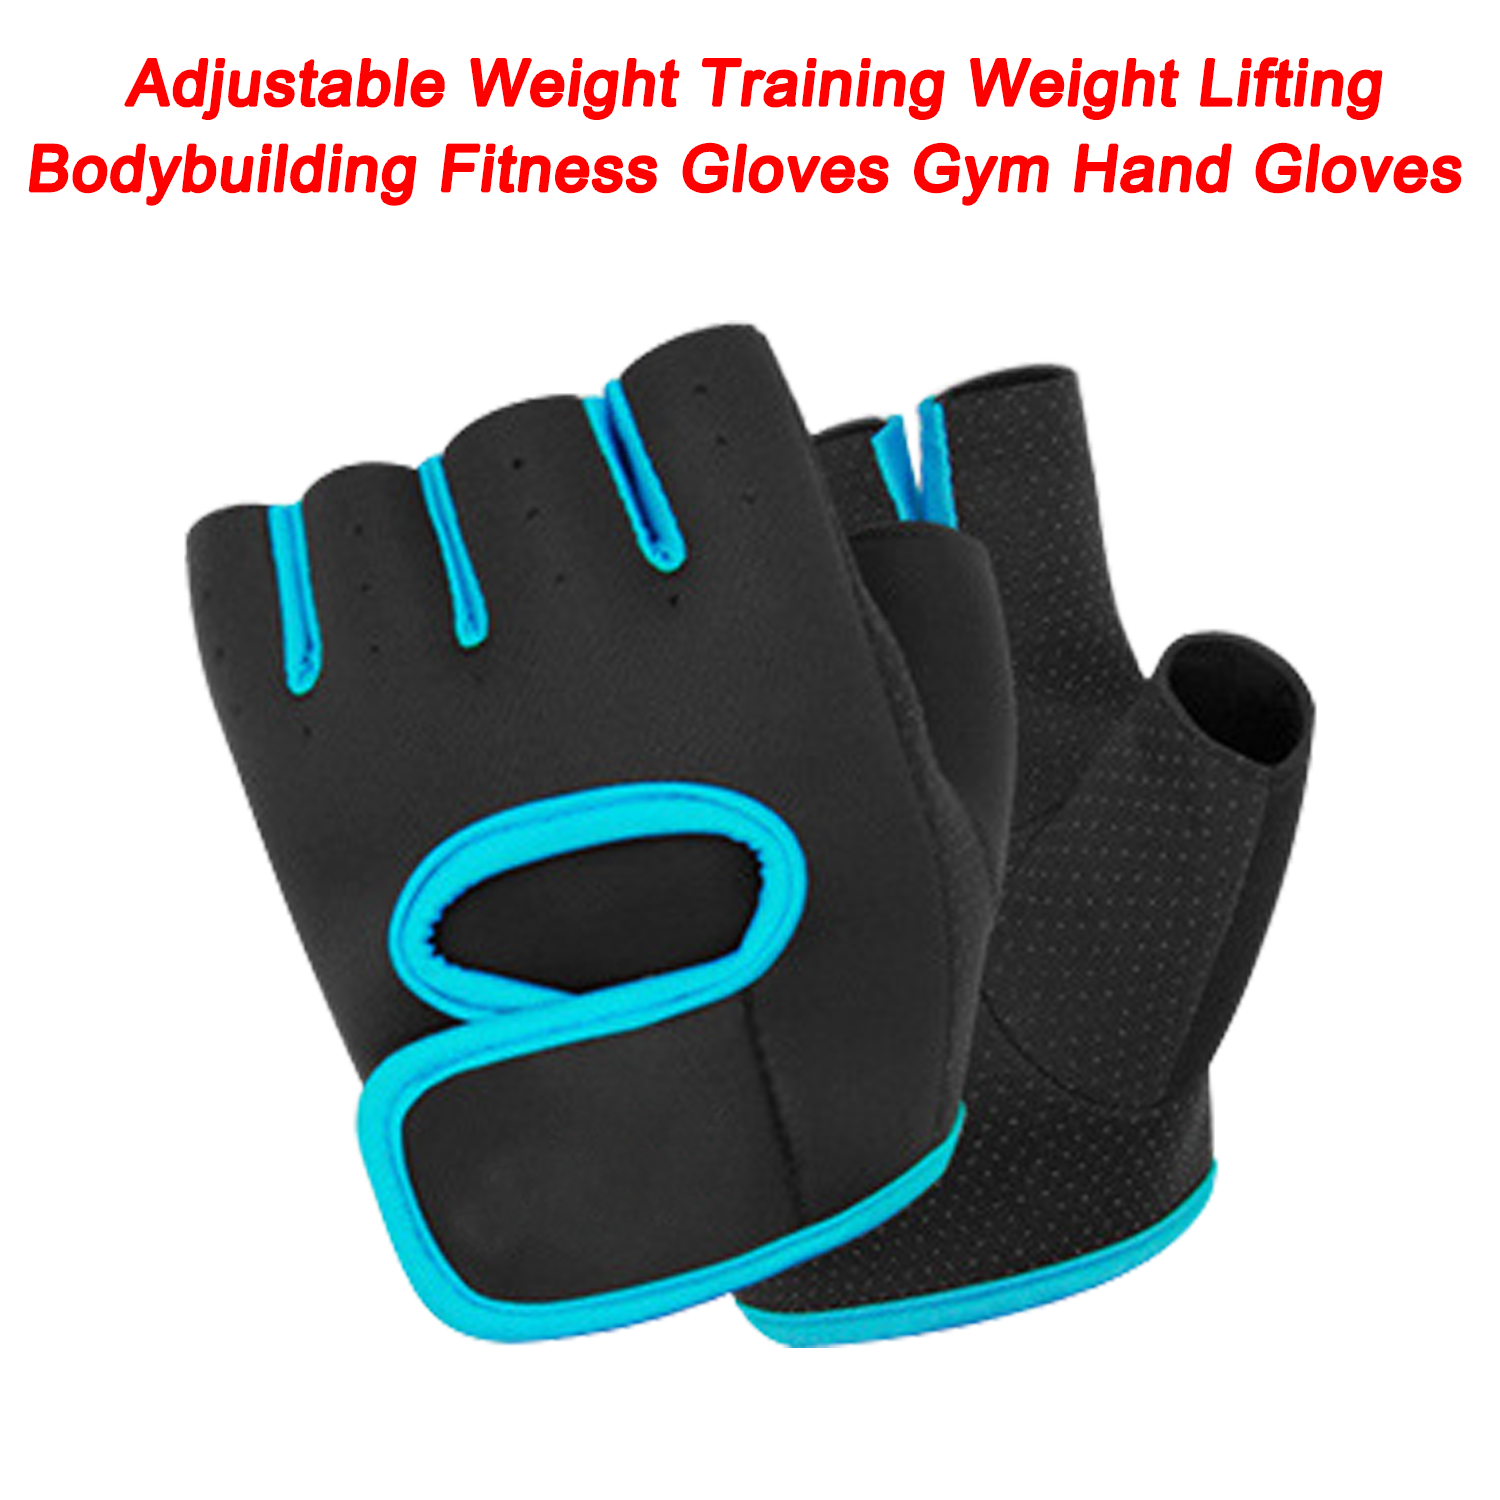 Guantes de entrenamiento Fitness, entrenamiento con pesas ajustable, levantamiento de pesas, culturismo, guantes de Fitness, guantes de mano para gimnasio